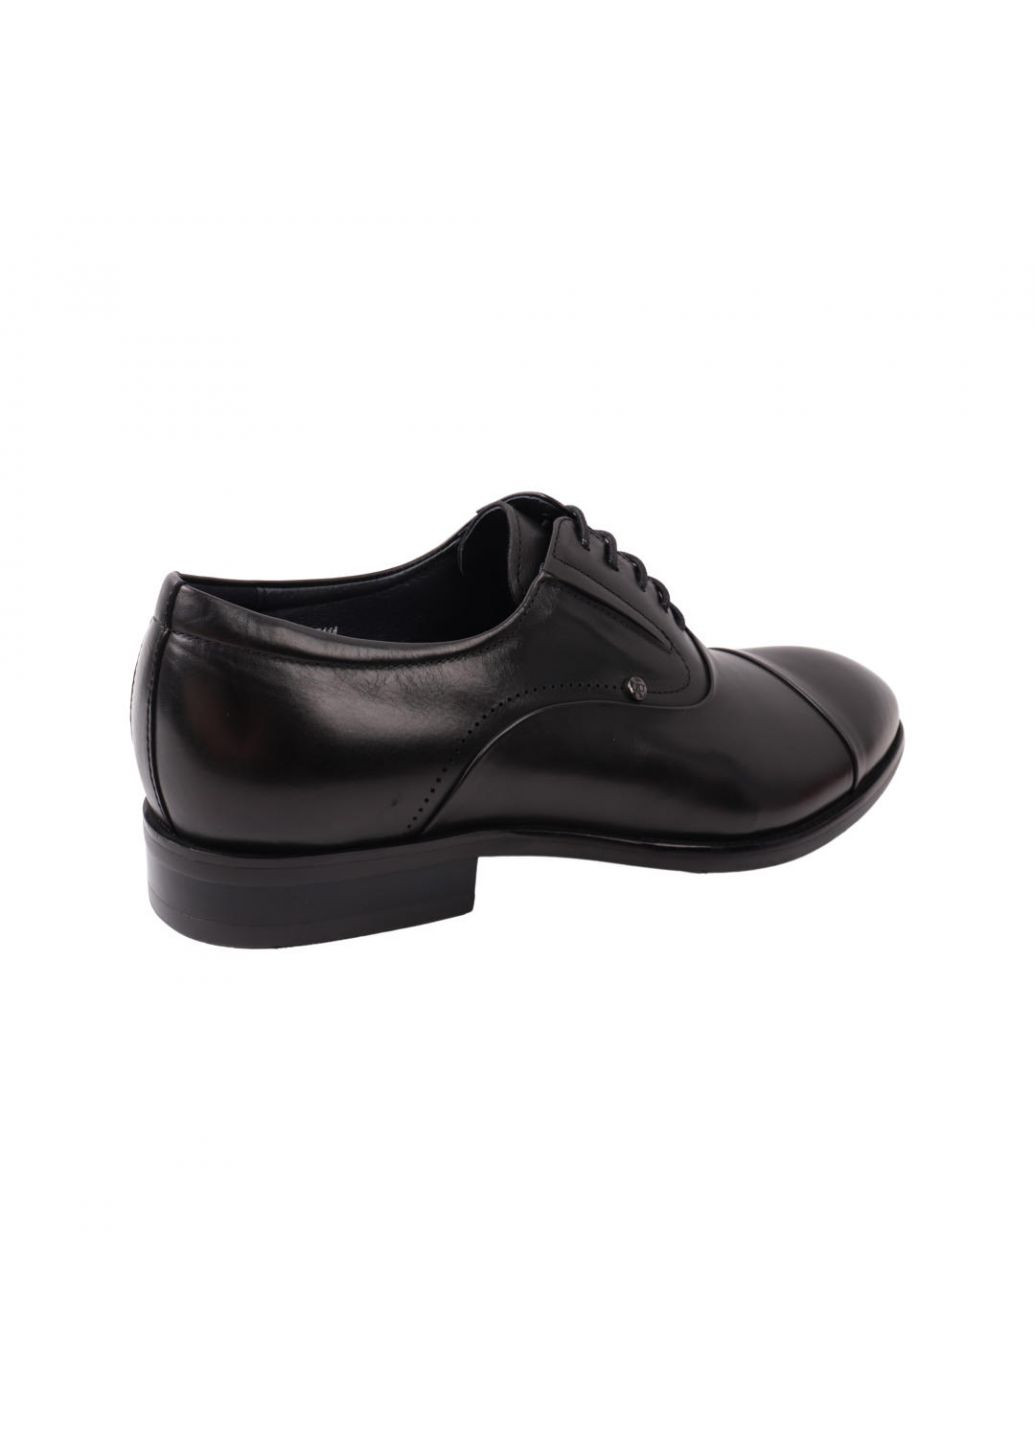 Туфлі чоловічі Lido Marinozi чорні натуральна шкіра Lido Marinozzi 237-21dt (257437821)